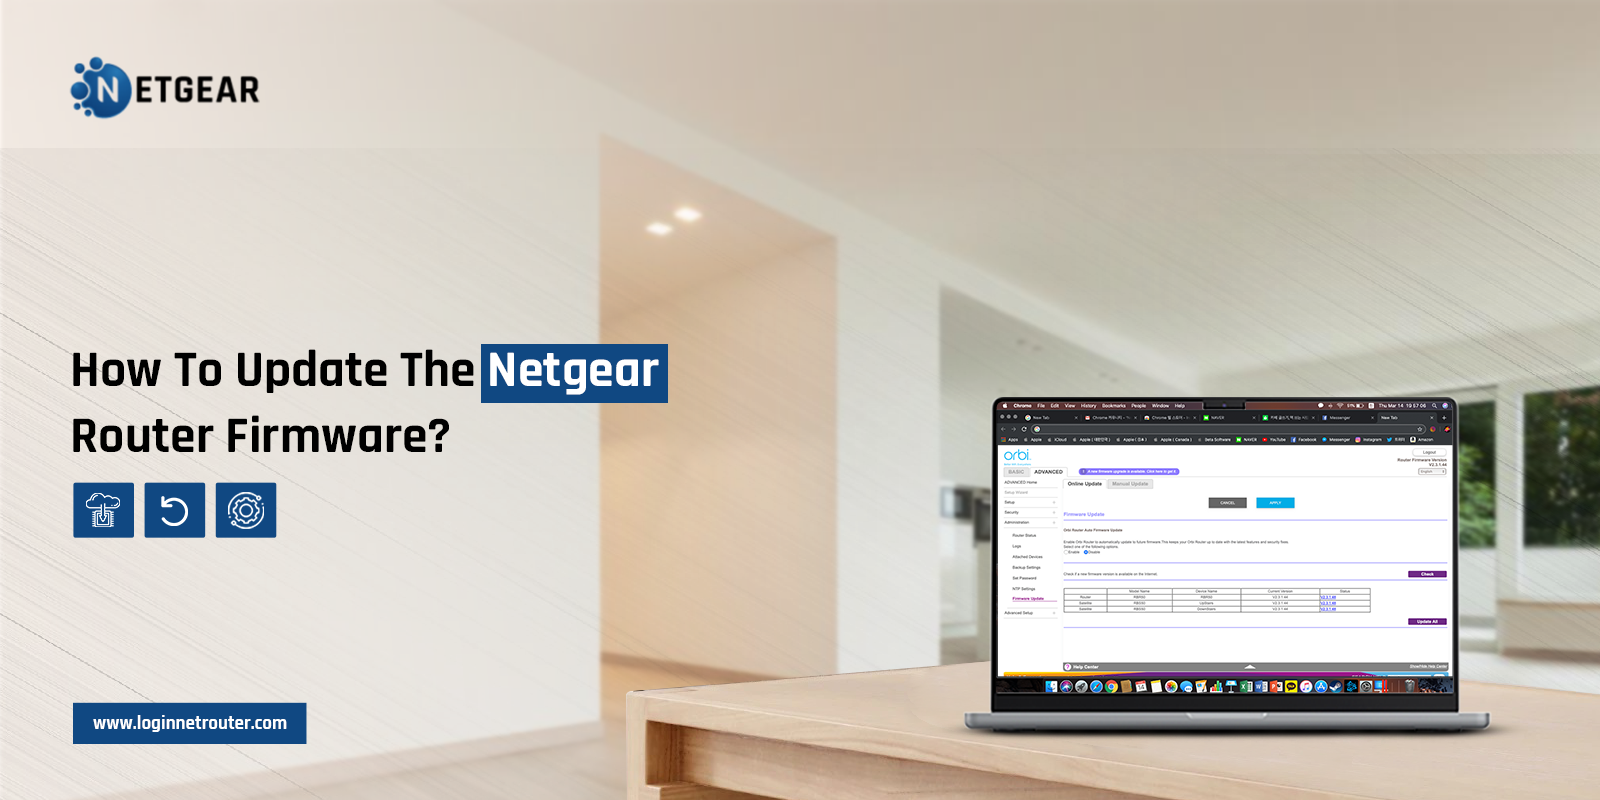 Update Netgear Router Firmware